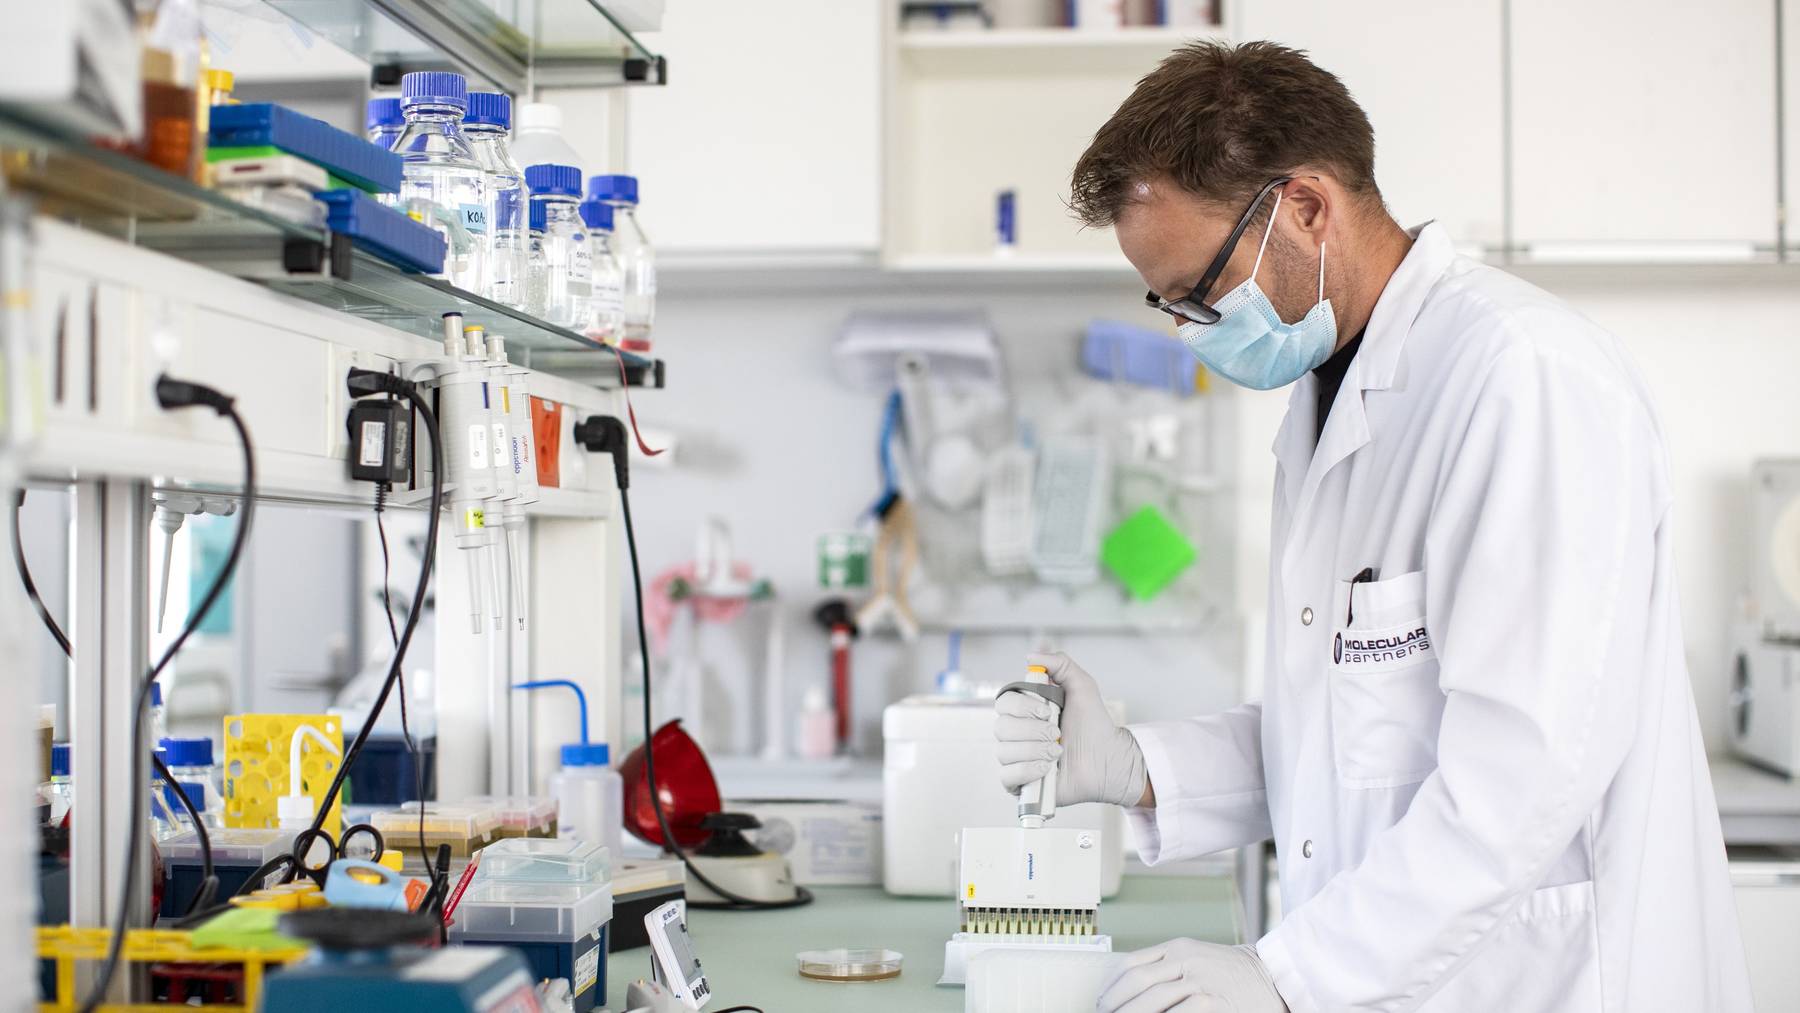 Marcel Walser, Teamleiter Covid-Projekt, bei der Anzucht einer Bakterienkultur im Labor von Molecular Partners , aufgenommen am Dienstag, 11. August 2020, in Schlieren.